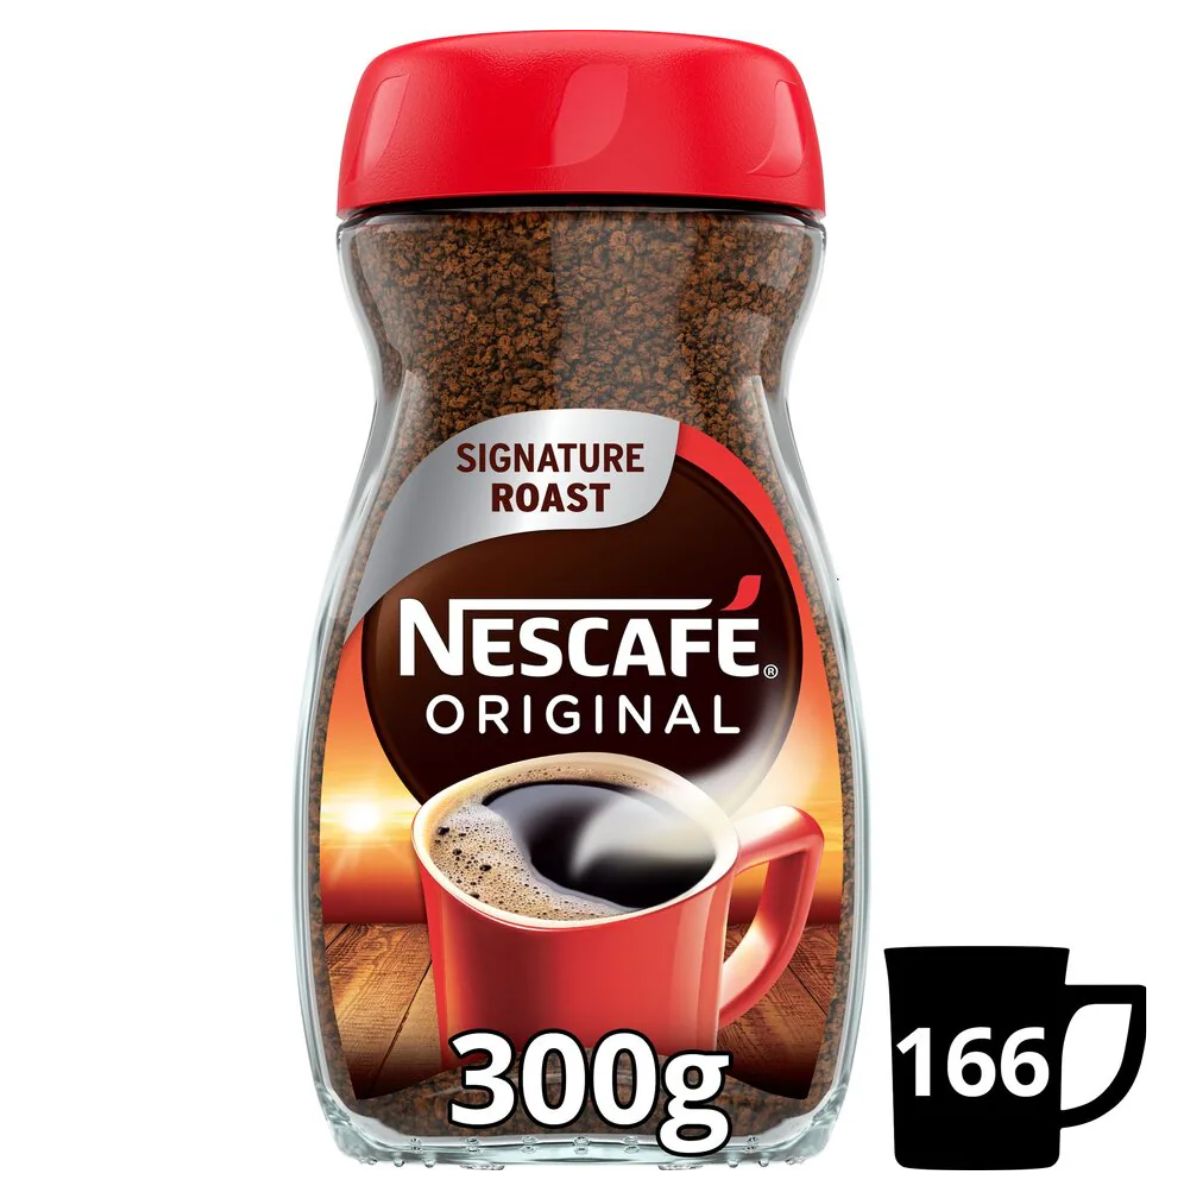 Nescafe - Original - 300g coffee powder.